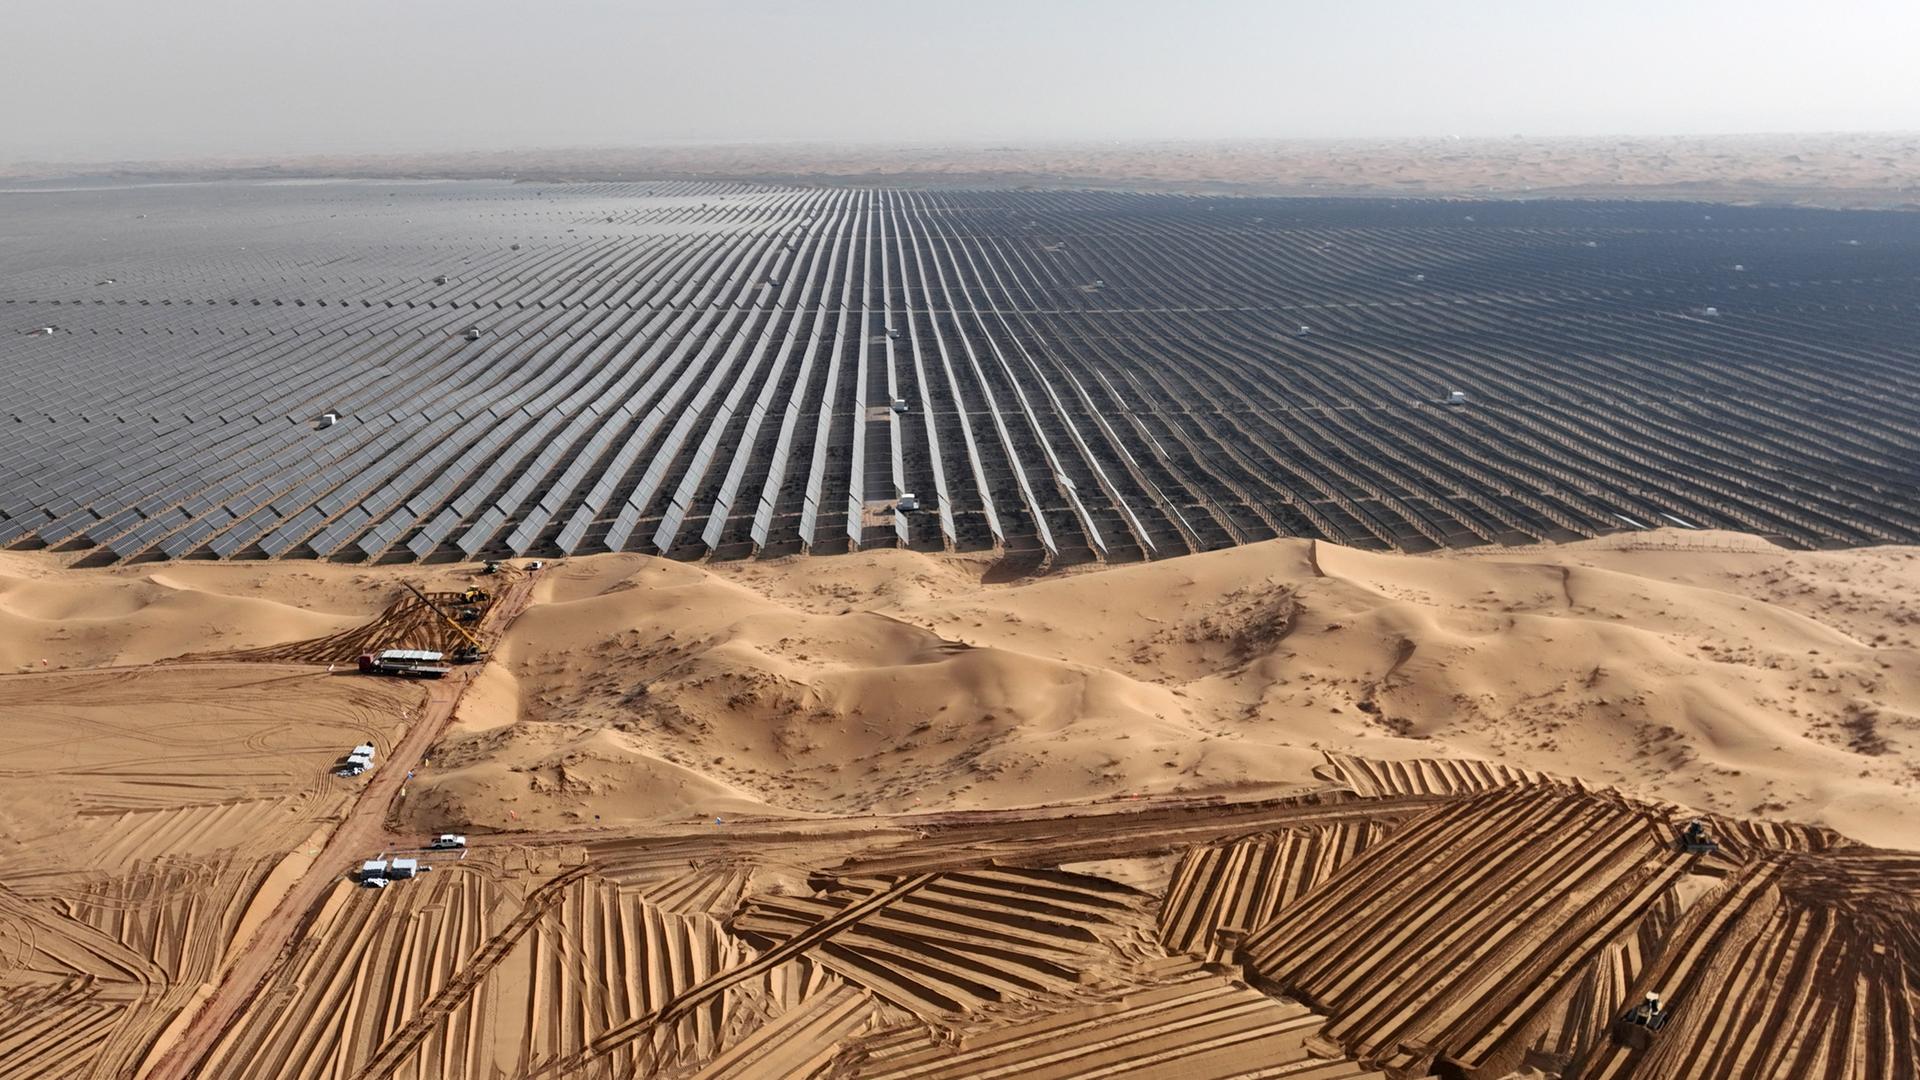 Luftaufnahme eines riesigen Feldes aus Solarpaneelen in einer Wüstengegend. Davor stehe Fahrzeuge, die weitere Paneele antransportieren.